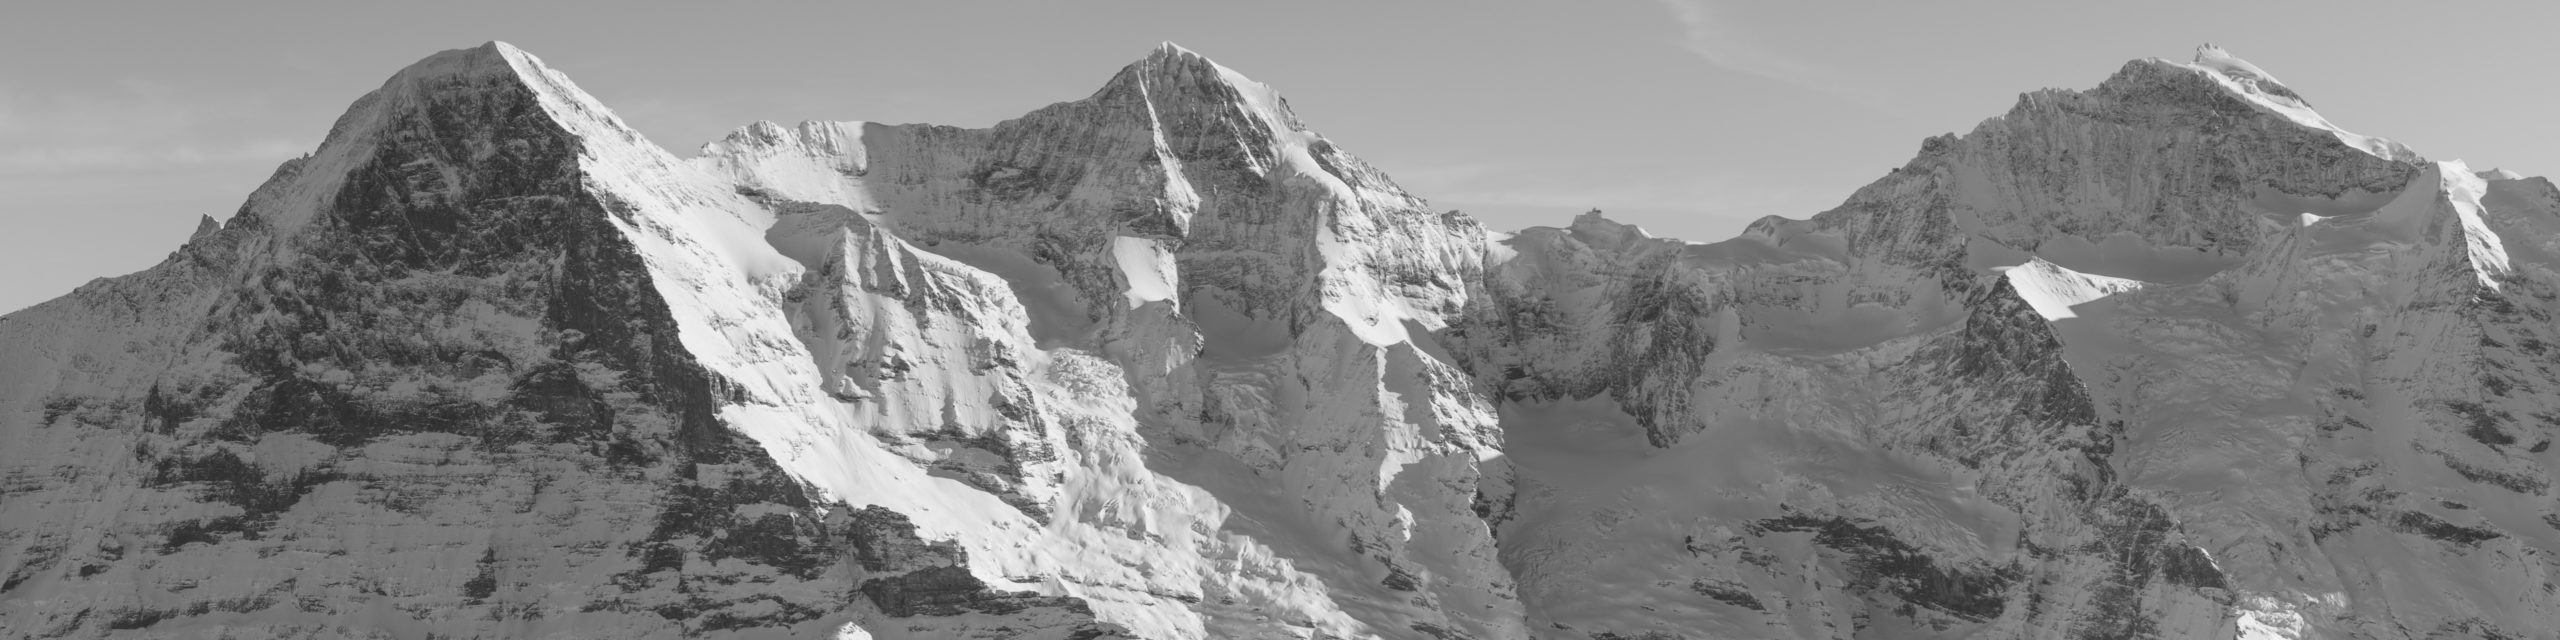 Schwarz-Weiß-Panorama der Berner Alpen - Rocky Mountains in der Schweiz